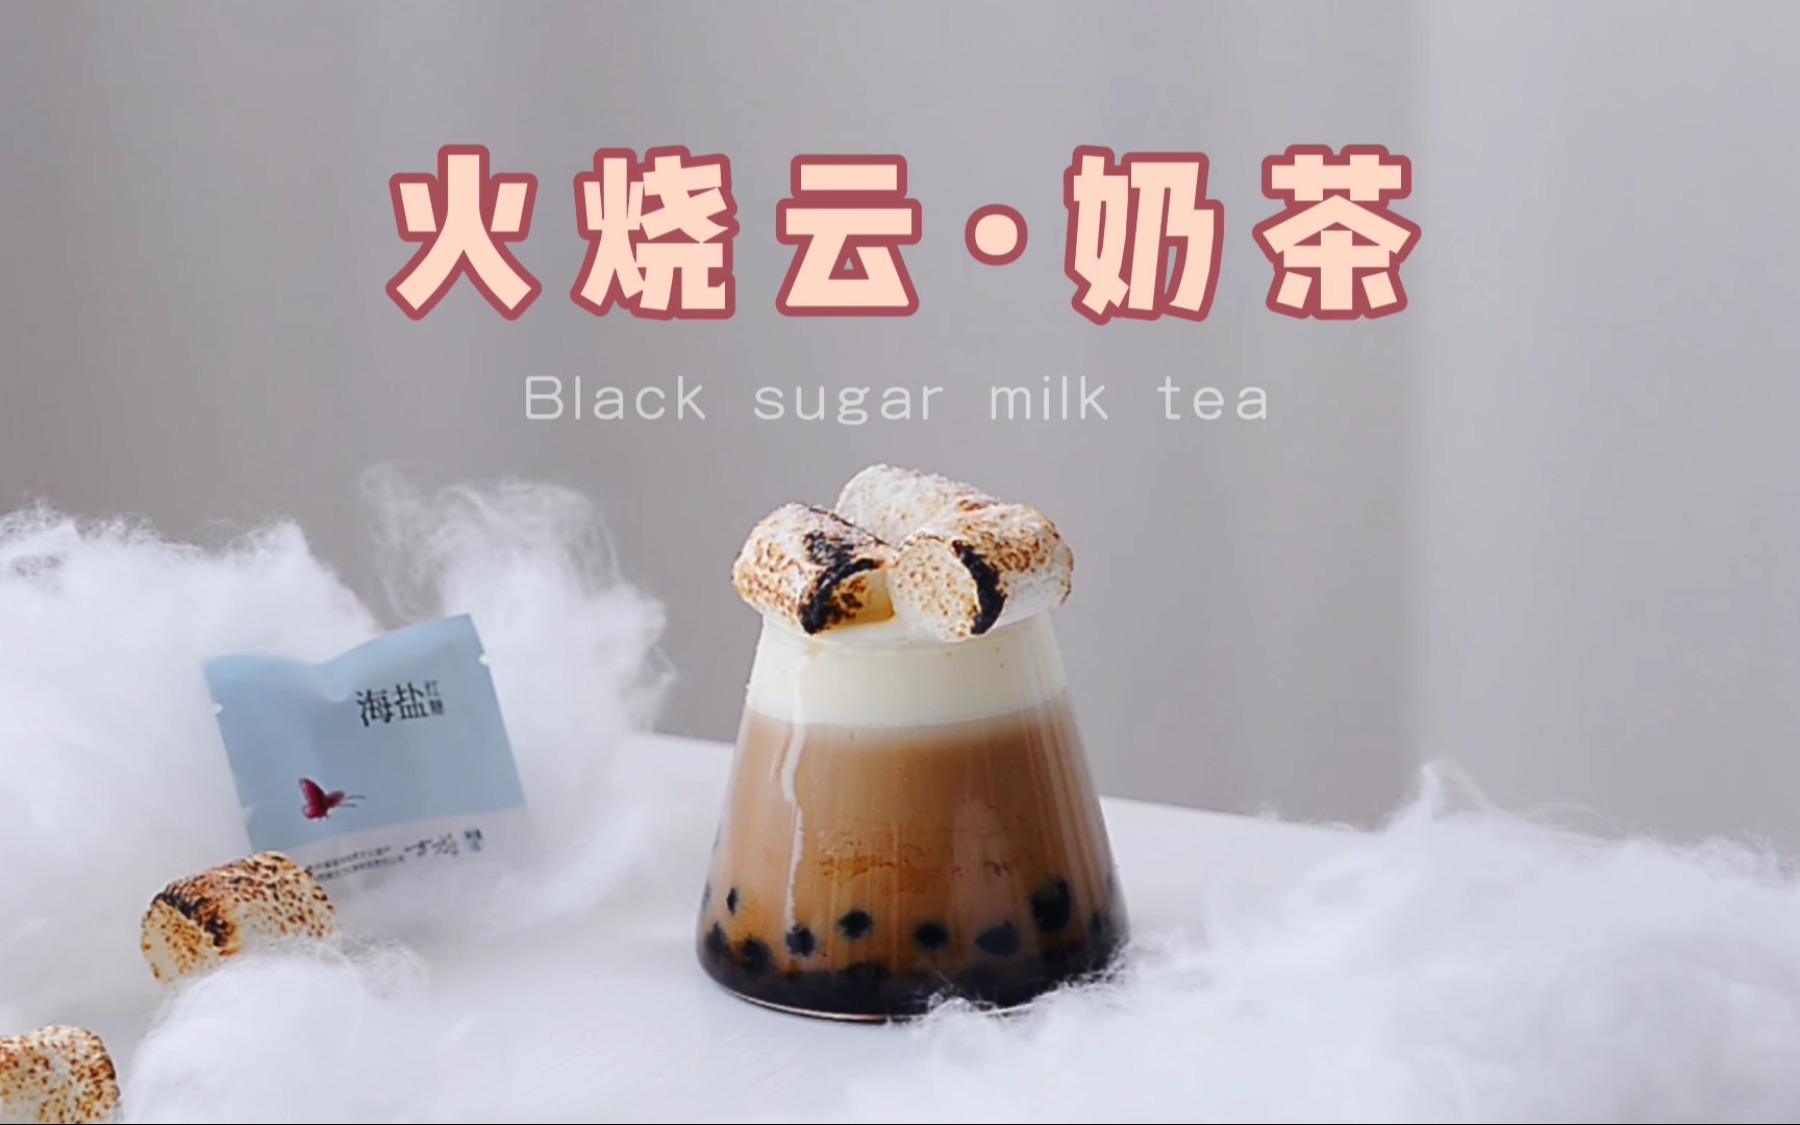 25岁华女独创“棉花糖”奶茶 风靡纽约 | 棉花糖 | 华裔 | 香港 | 大纪元